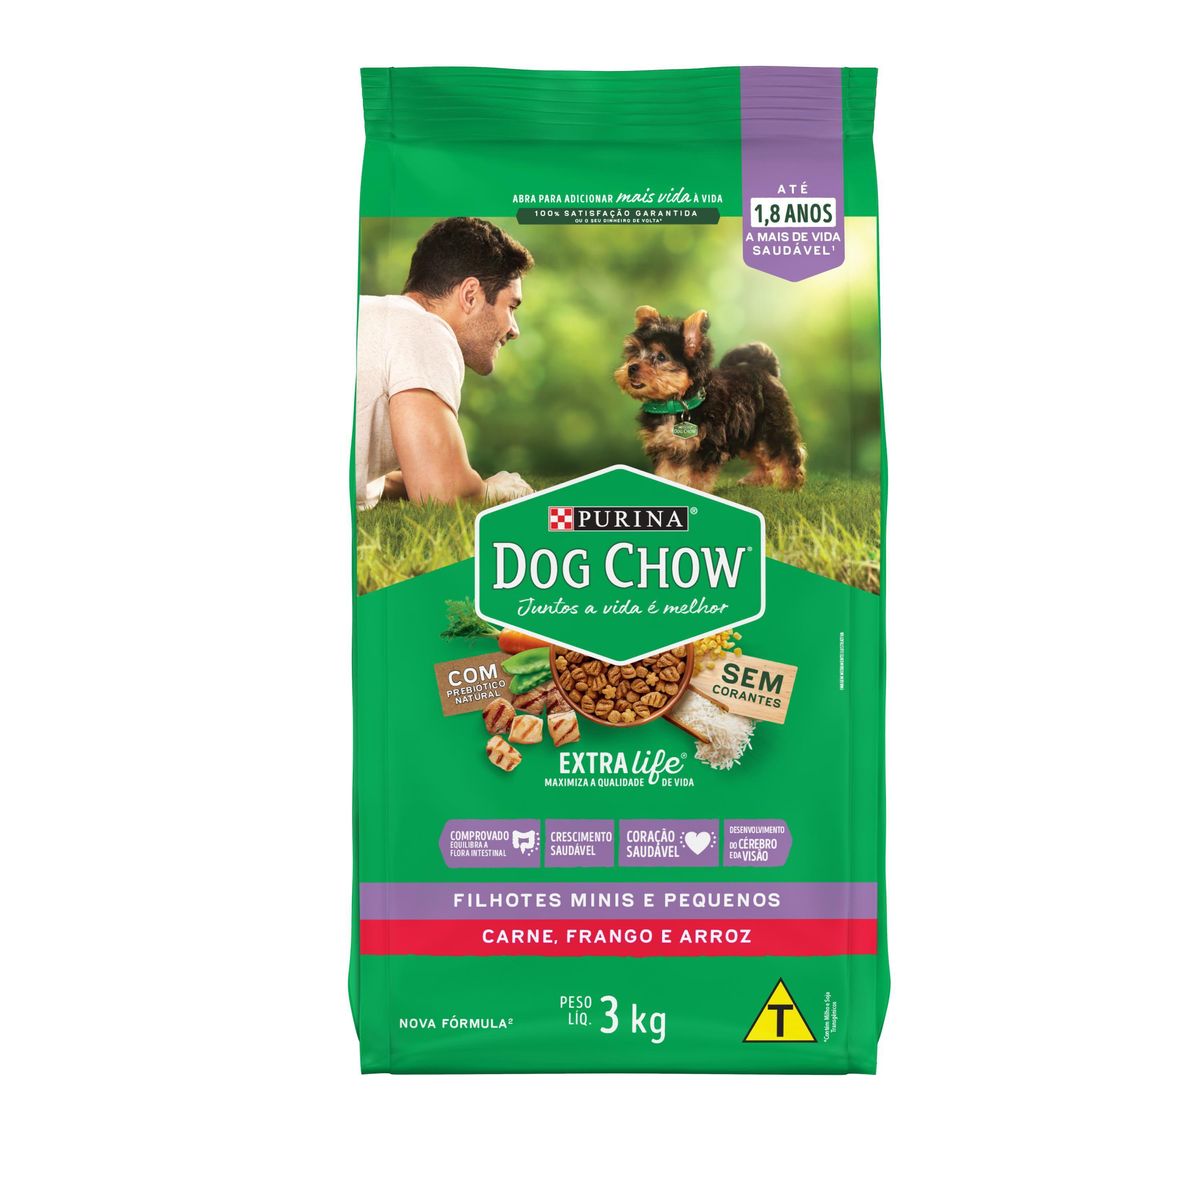 Alimento Dog Chow Cães Filhotes Minis e Pequenos Carne, Frango e Arroz 3kg image number 0